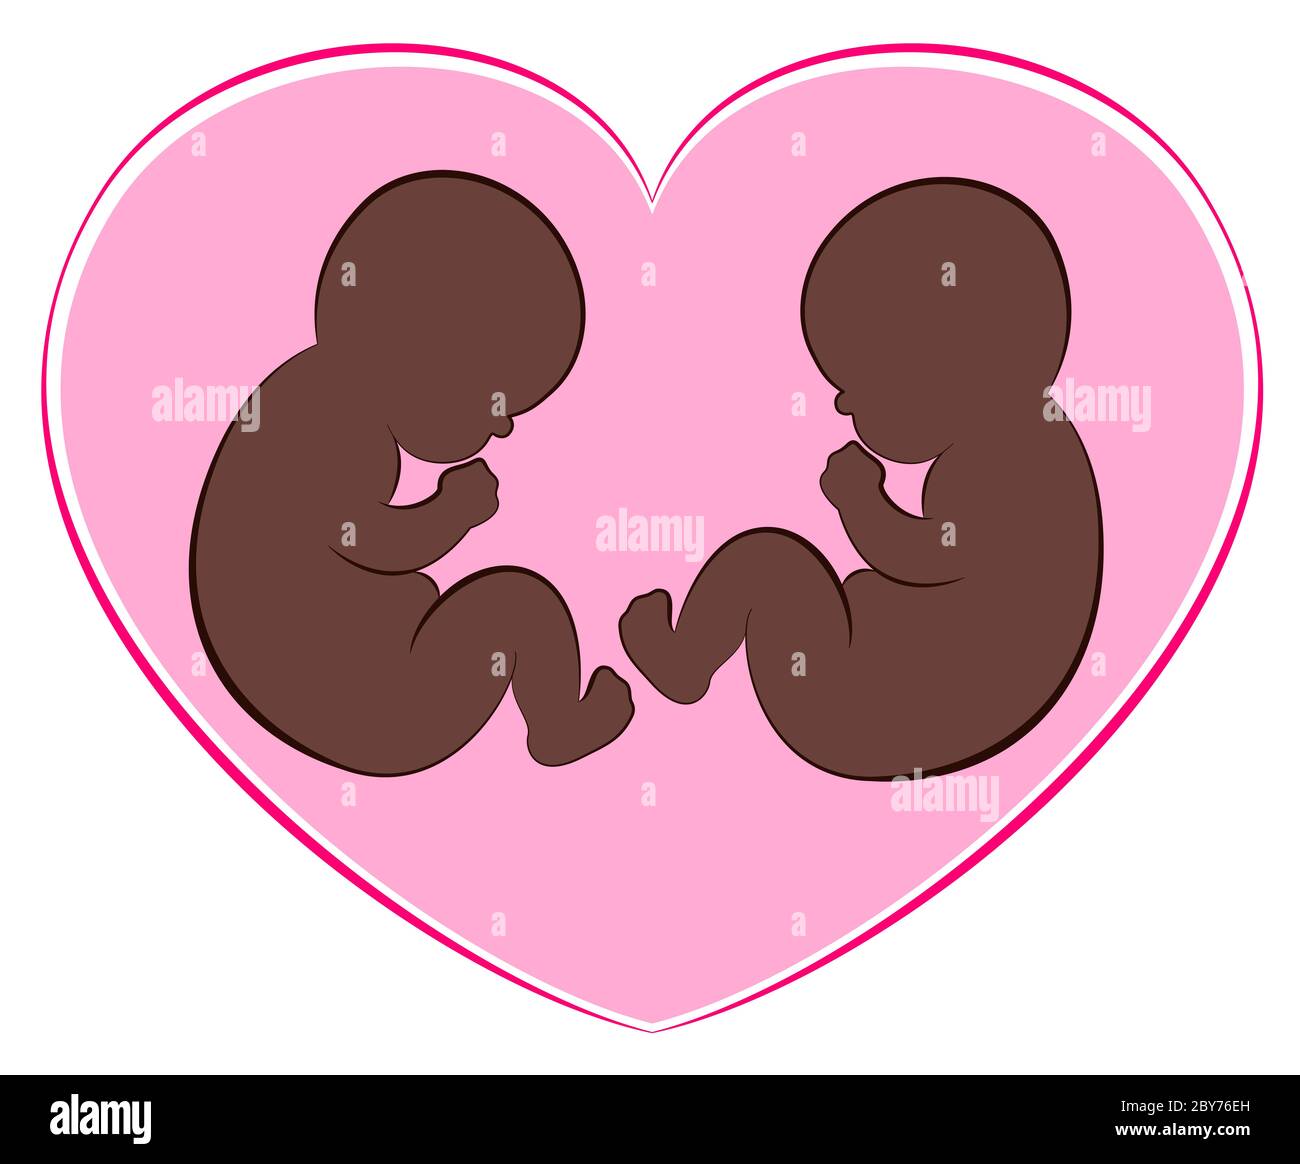 Illustration de deux bébés noirs ou jumeaux avec un cœur rose autour d'eux. Banque D'Images